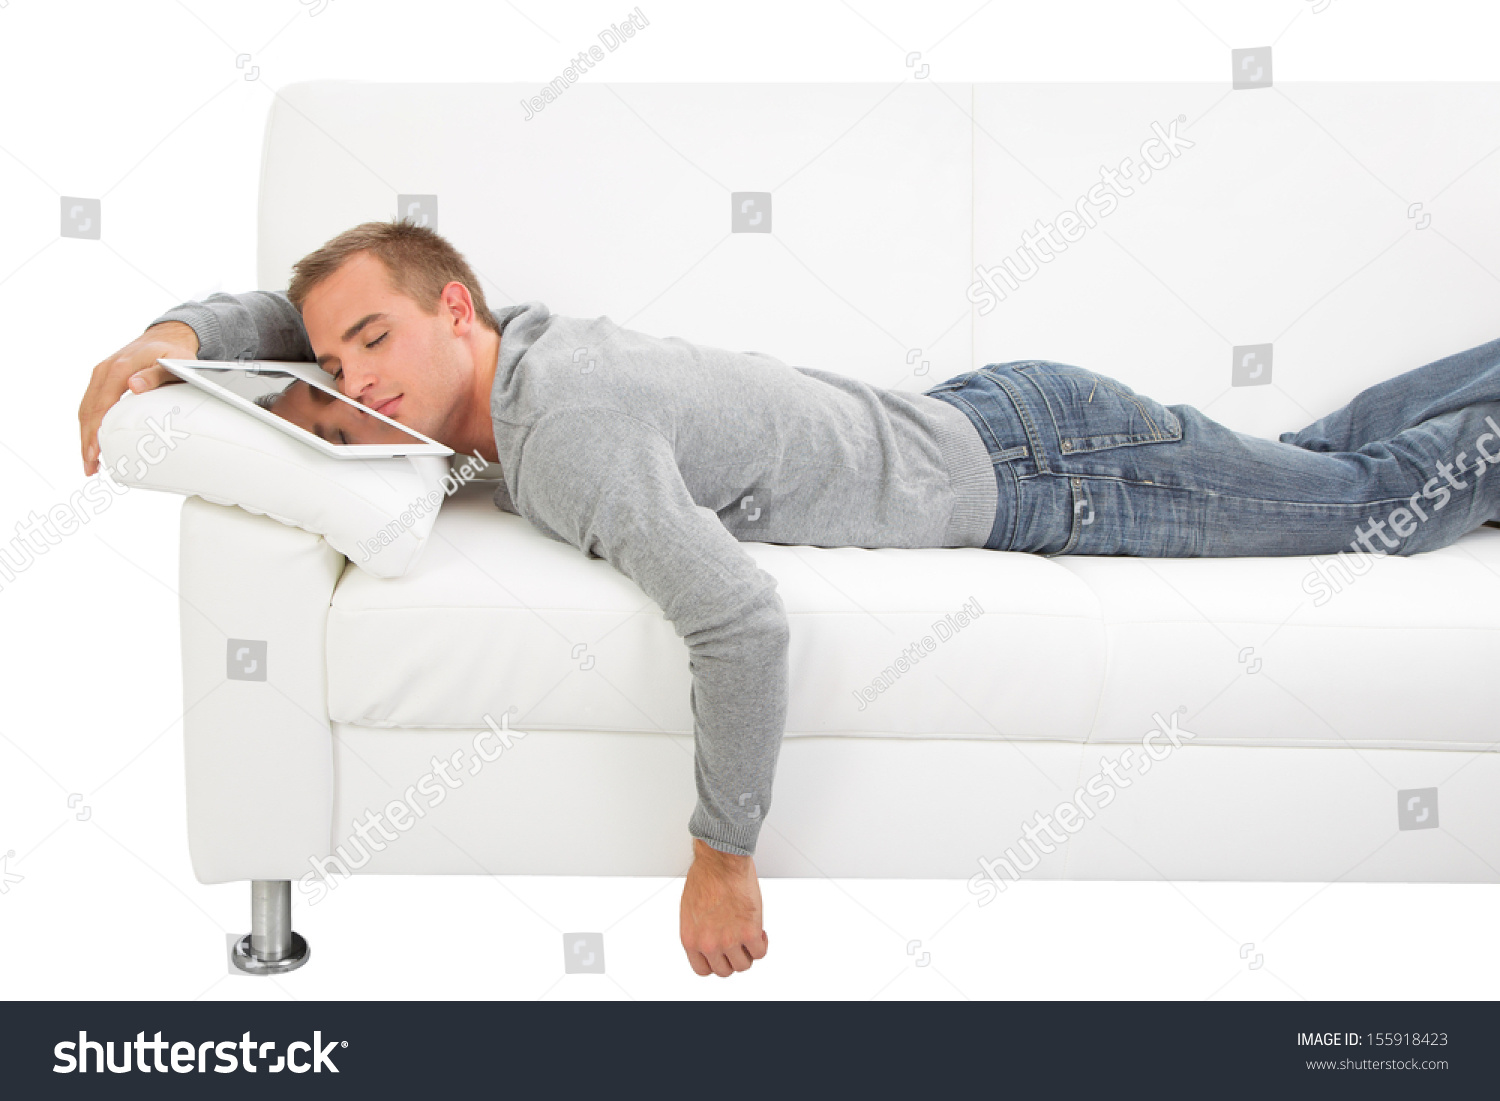 человек умер на диване